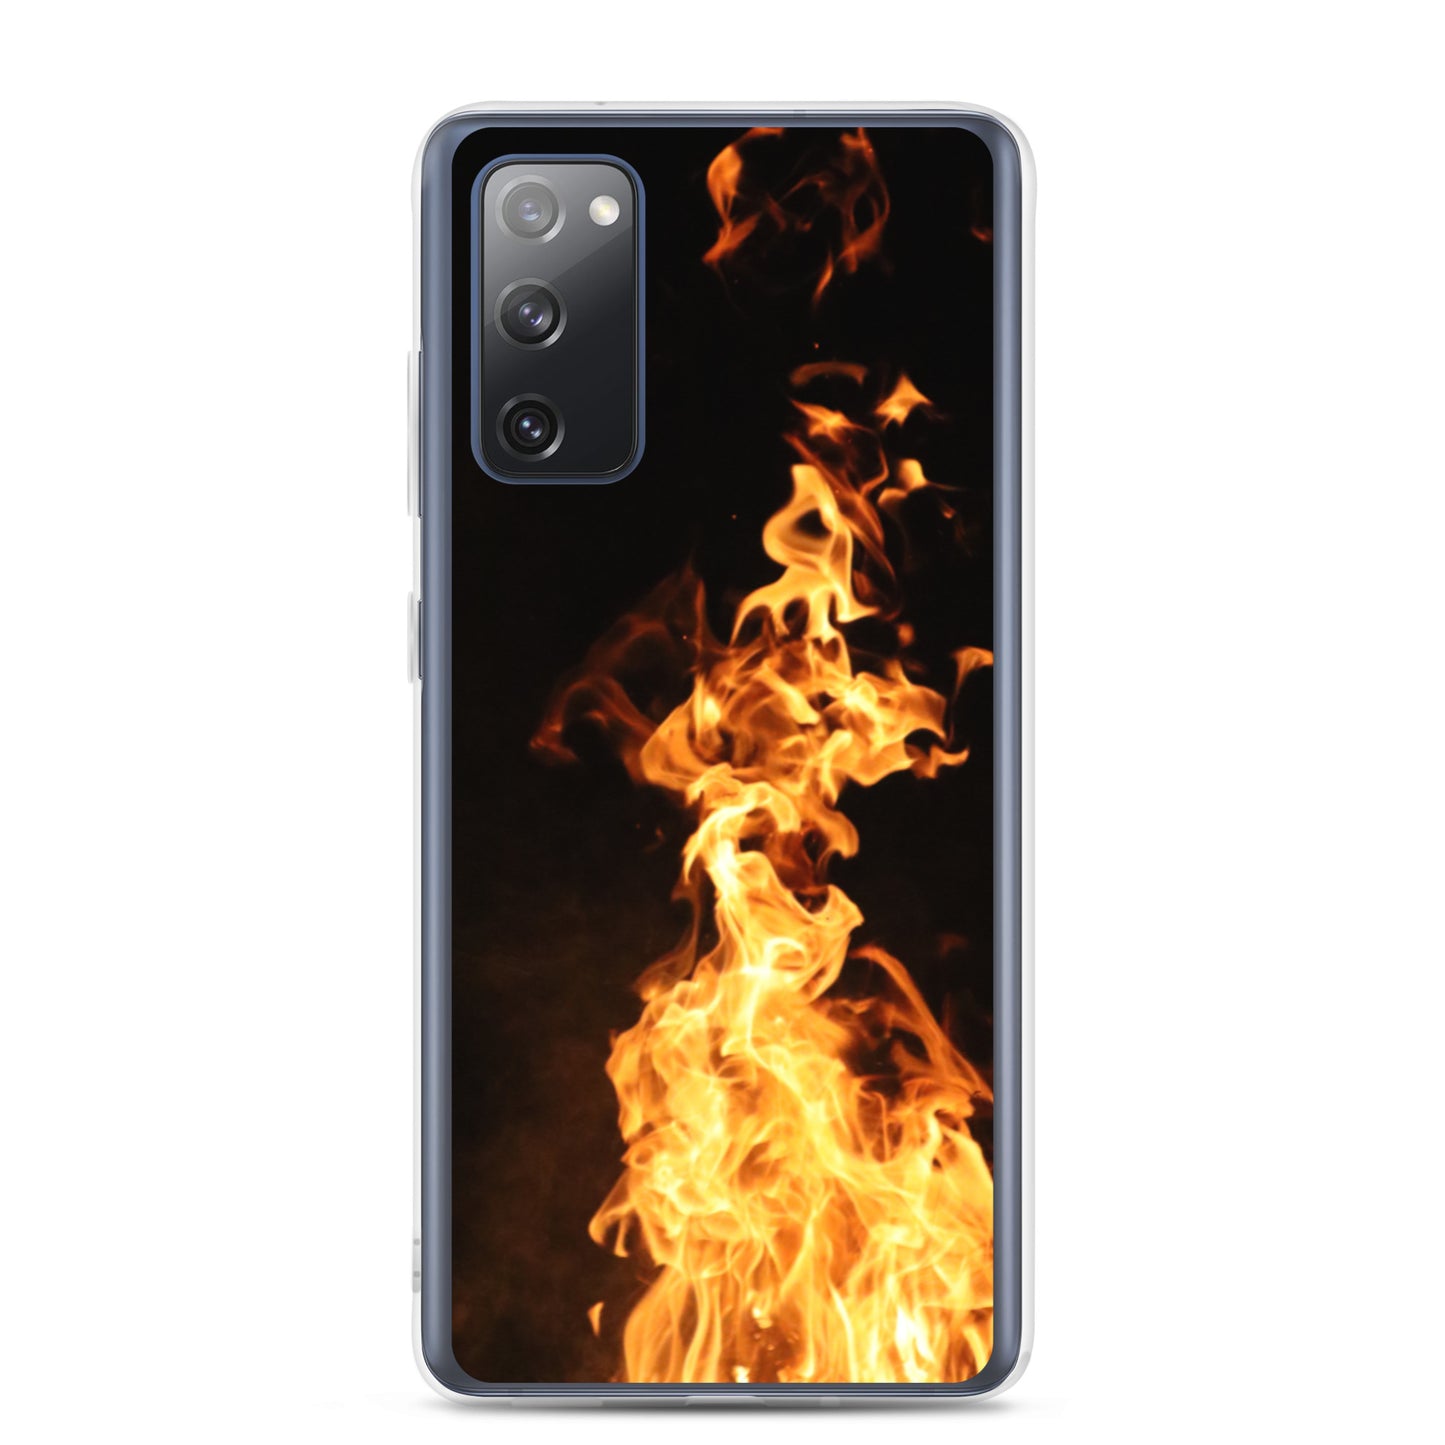 Fire Spirits Samsung Case - "True Fire"